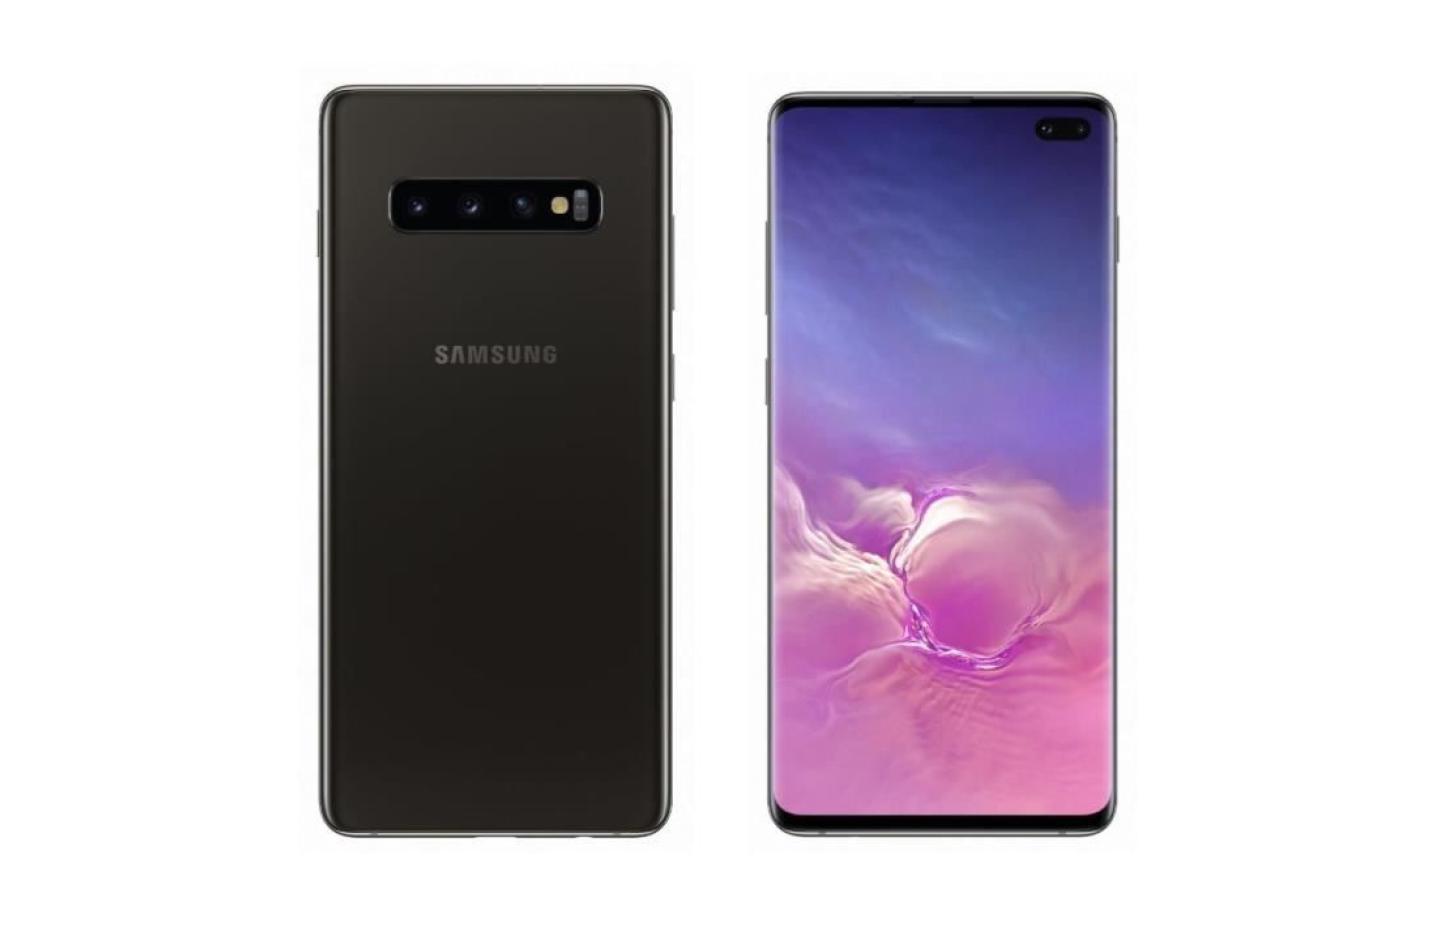 Soldes 2020 : une remise exceptionnelle de 50 % sur le Samsung Galaxy S10+ Edition Performance 1 To